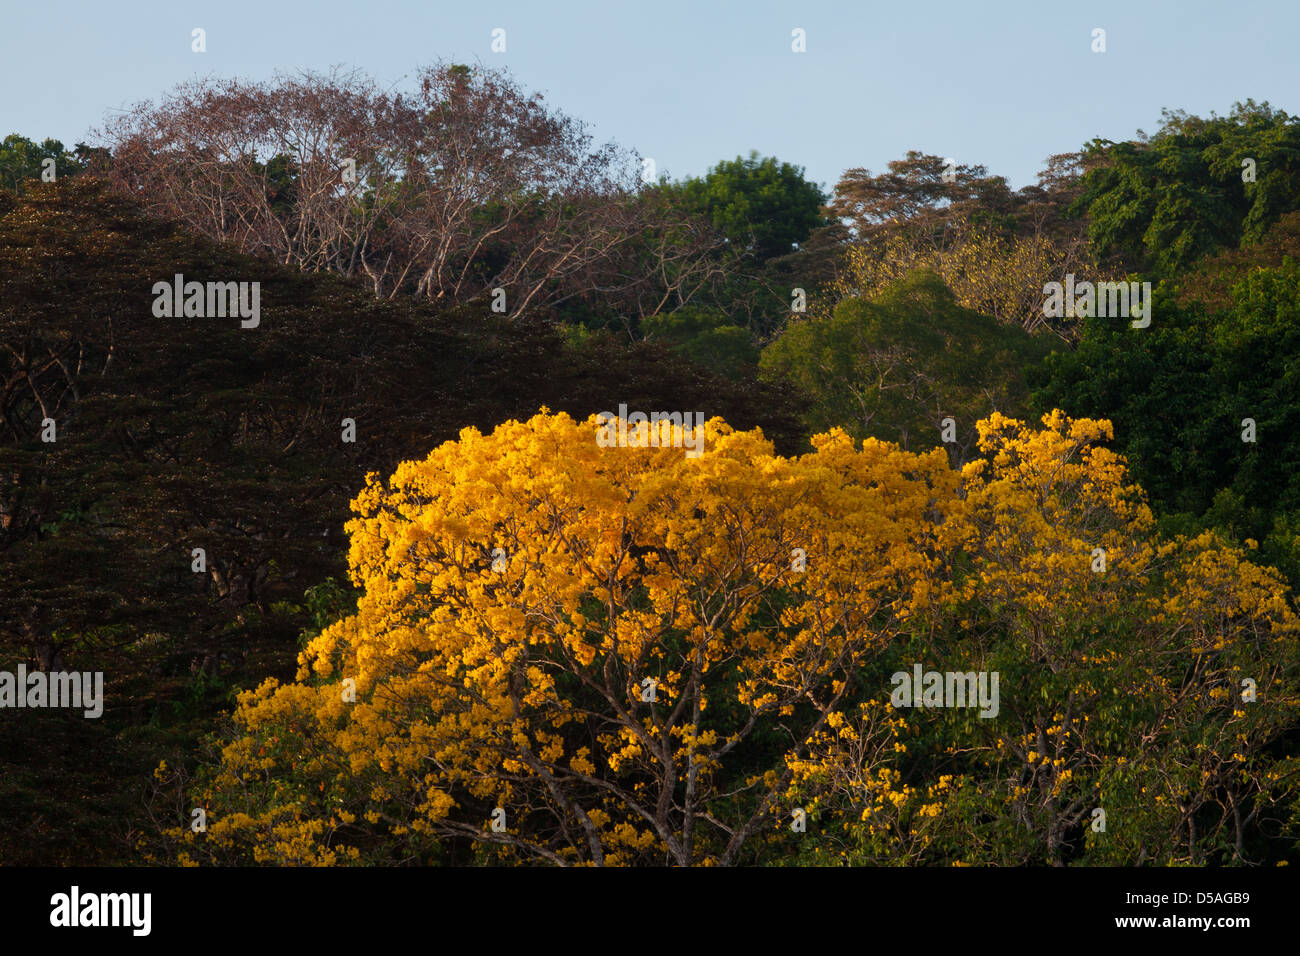 Arbre d'or (Guayacan) sci,nom ; Tabebuia guayacan, au parc national de Soberania, province de Panama, République du Panama. Banque D'Images